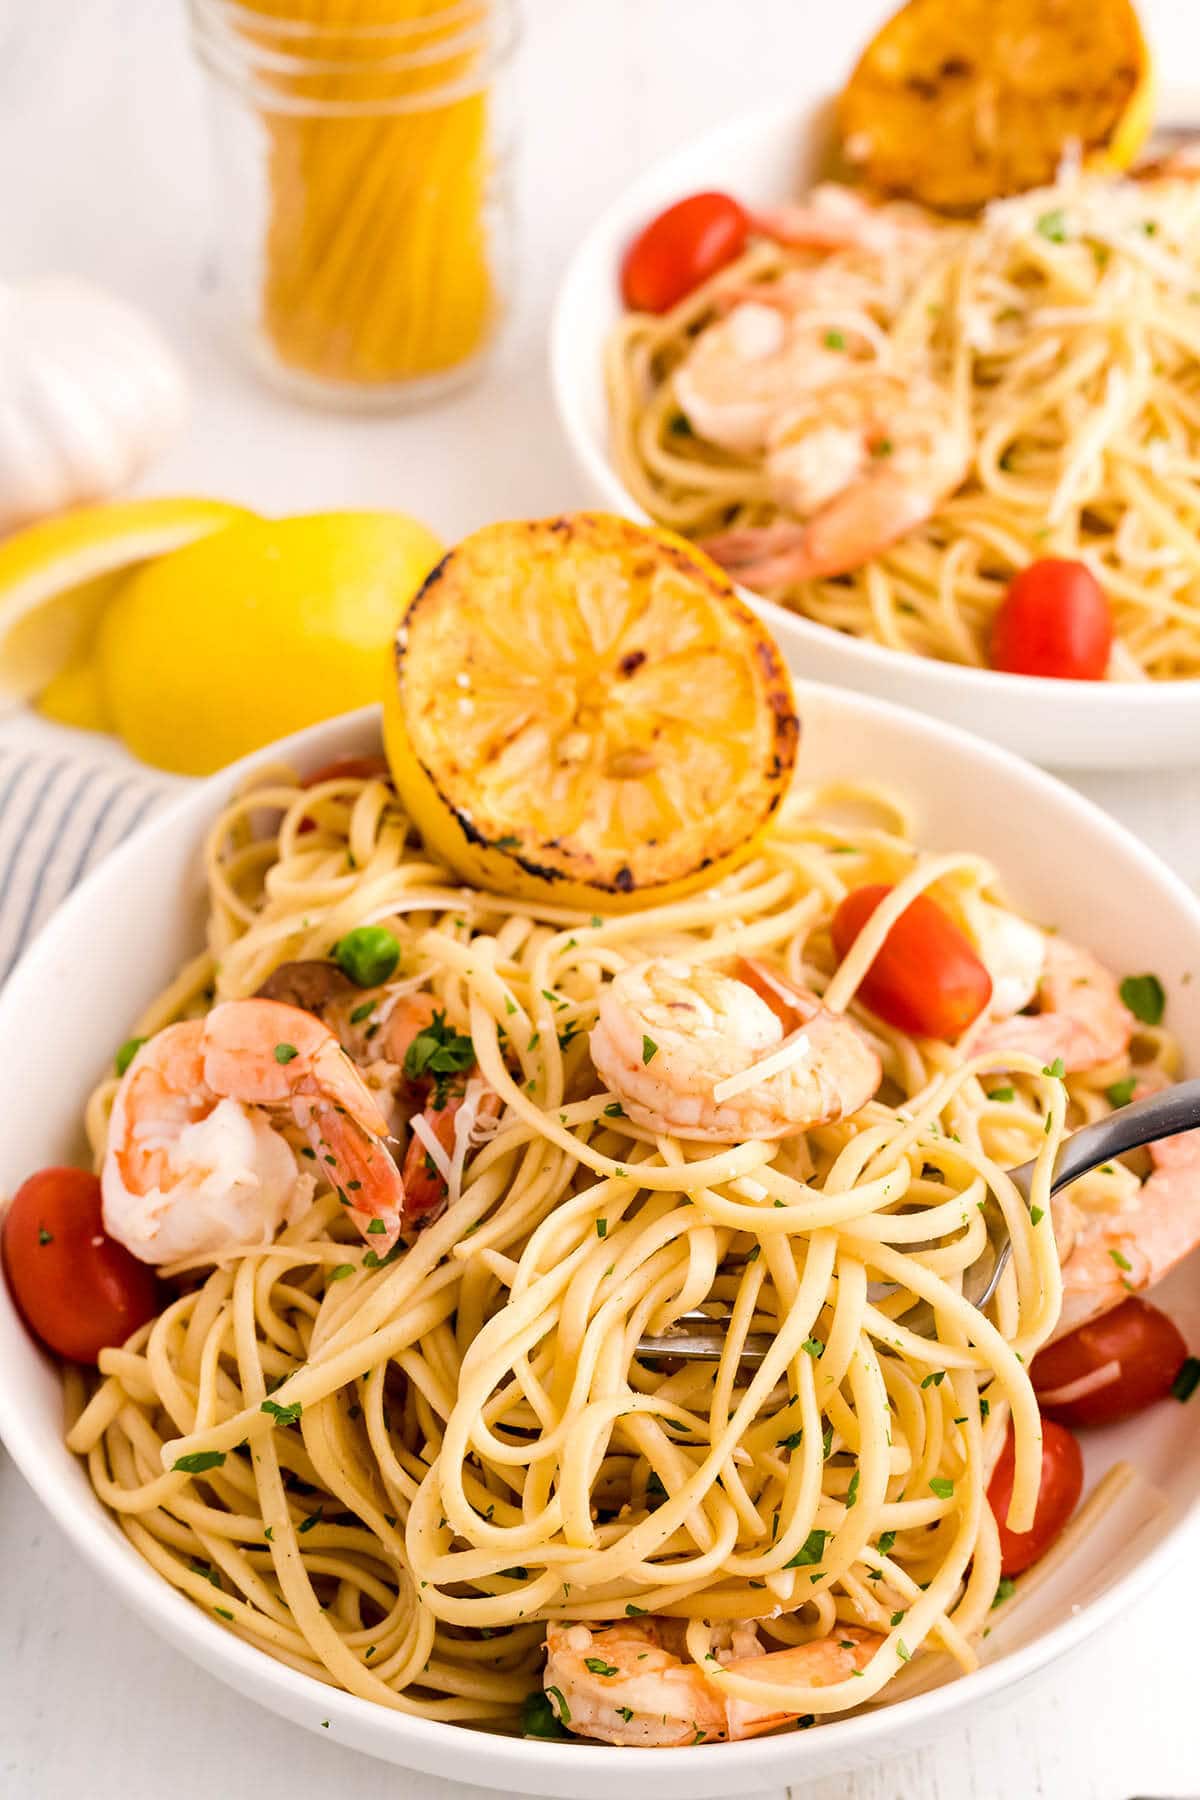 Shrimp Scampi with Vegetables in bowl.